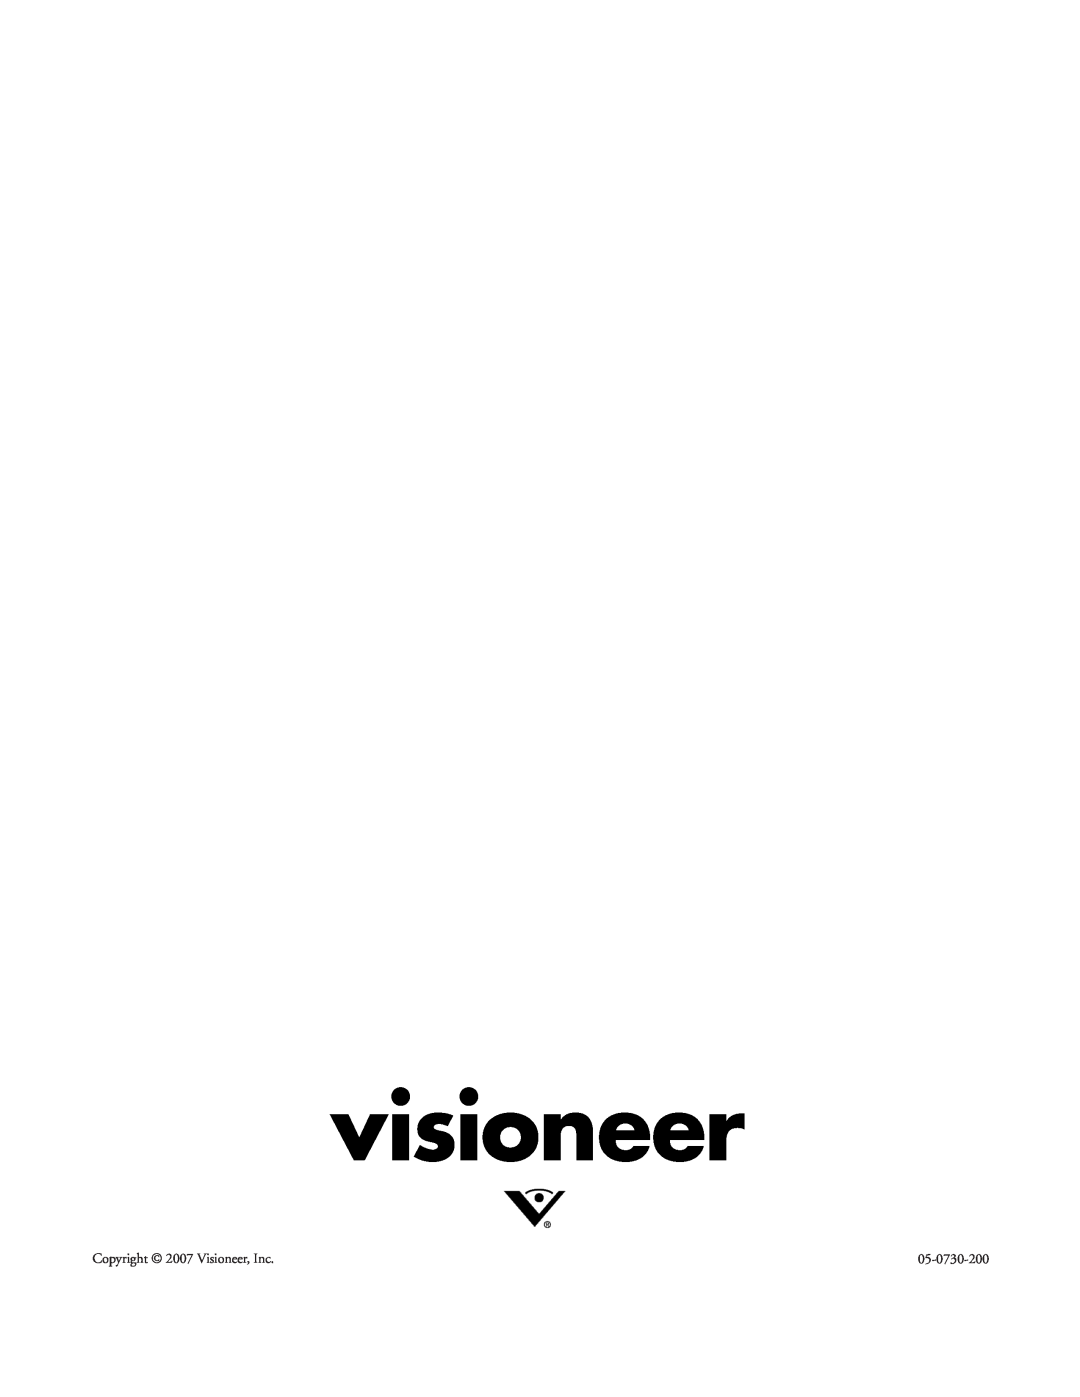 Visioneer XP220 manual visioneer, Copyright 2007 Visioneer, Inc, 05-0730-200 